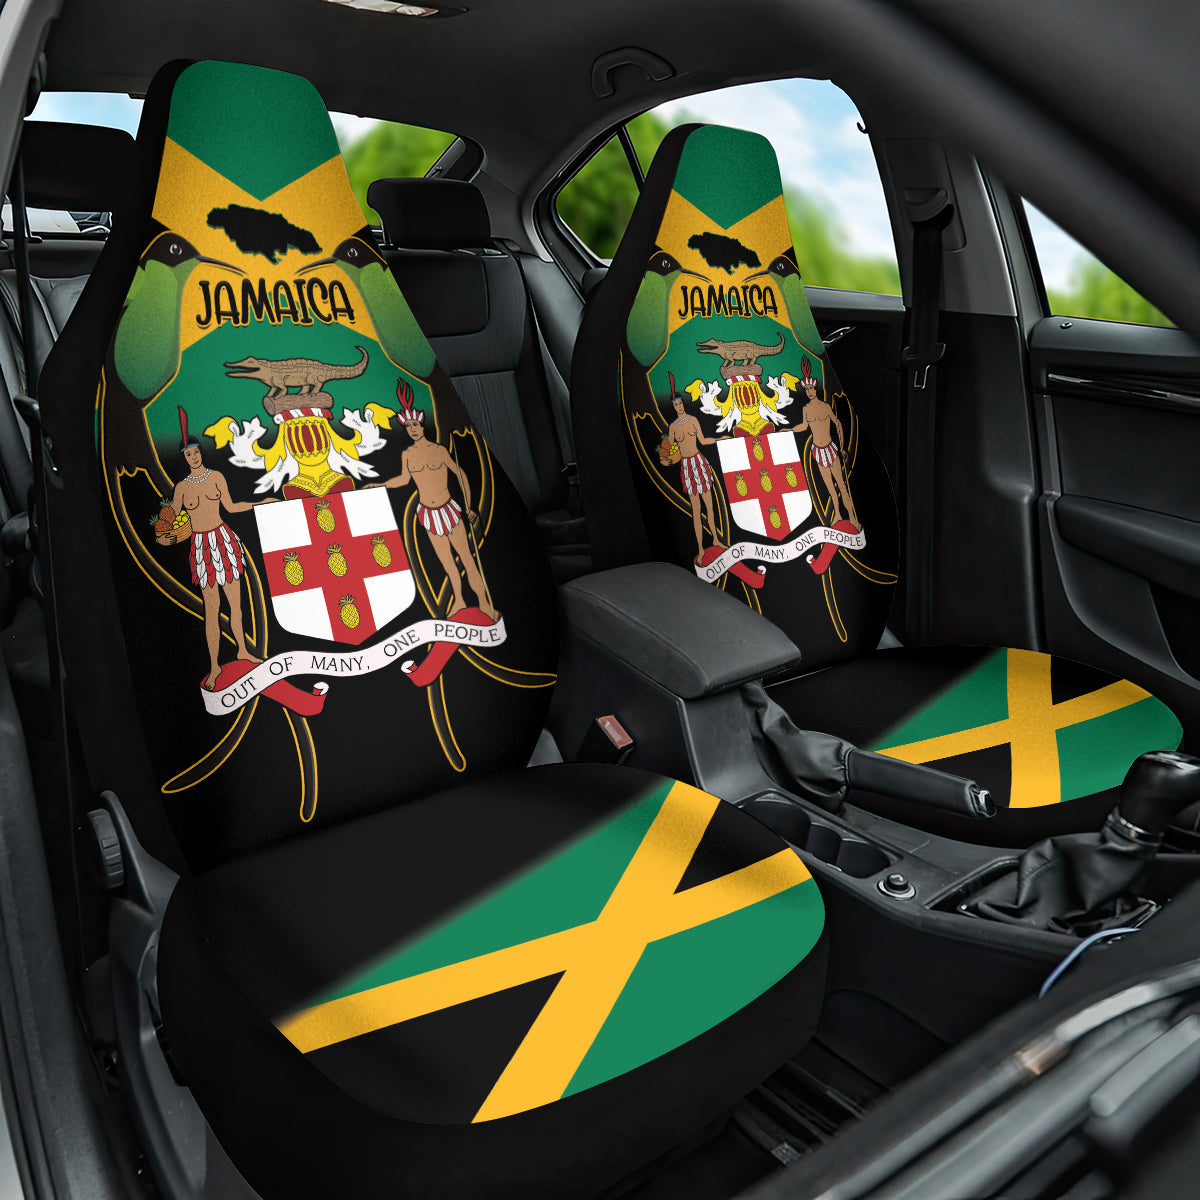 Jamaica Independence Day Car Seat Cover Jumieka Coat Of Arms Mix Hummingbird